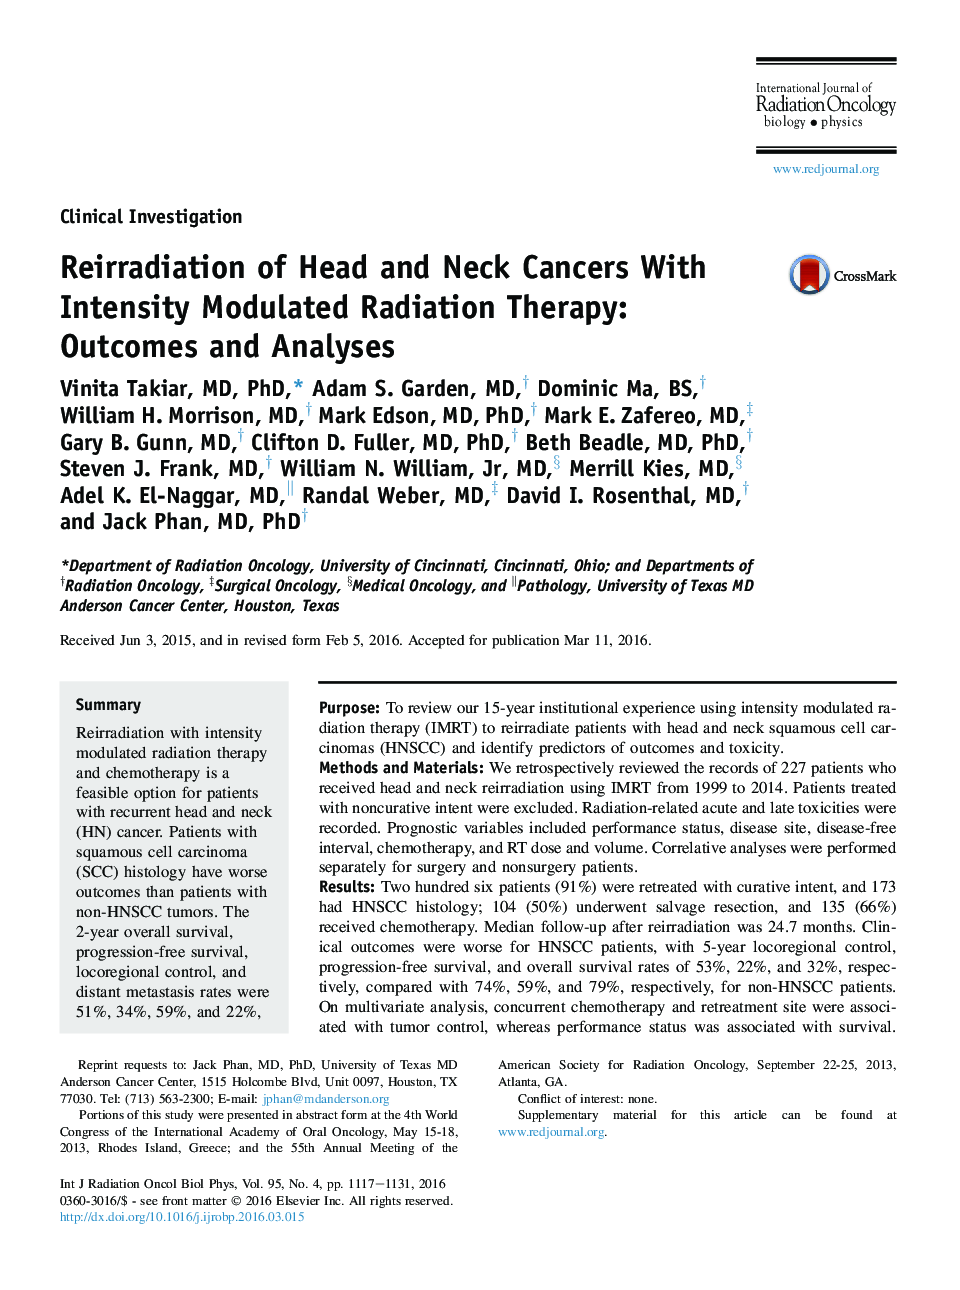 انتشار نور سرطان سر و گردن با روش پرتودرمانی مدولاسیون شدید: نتایج و تحلیل ها 